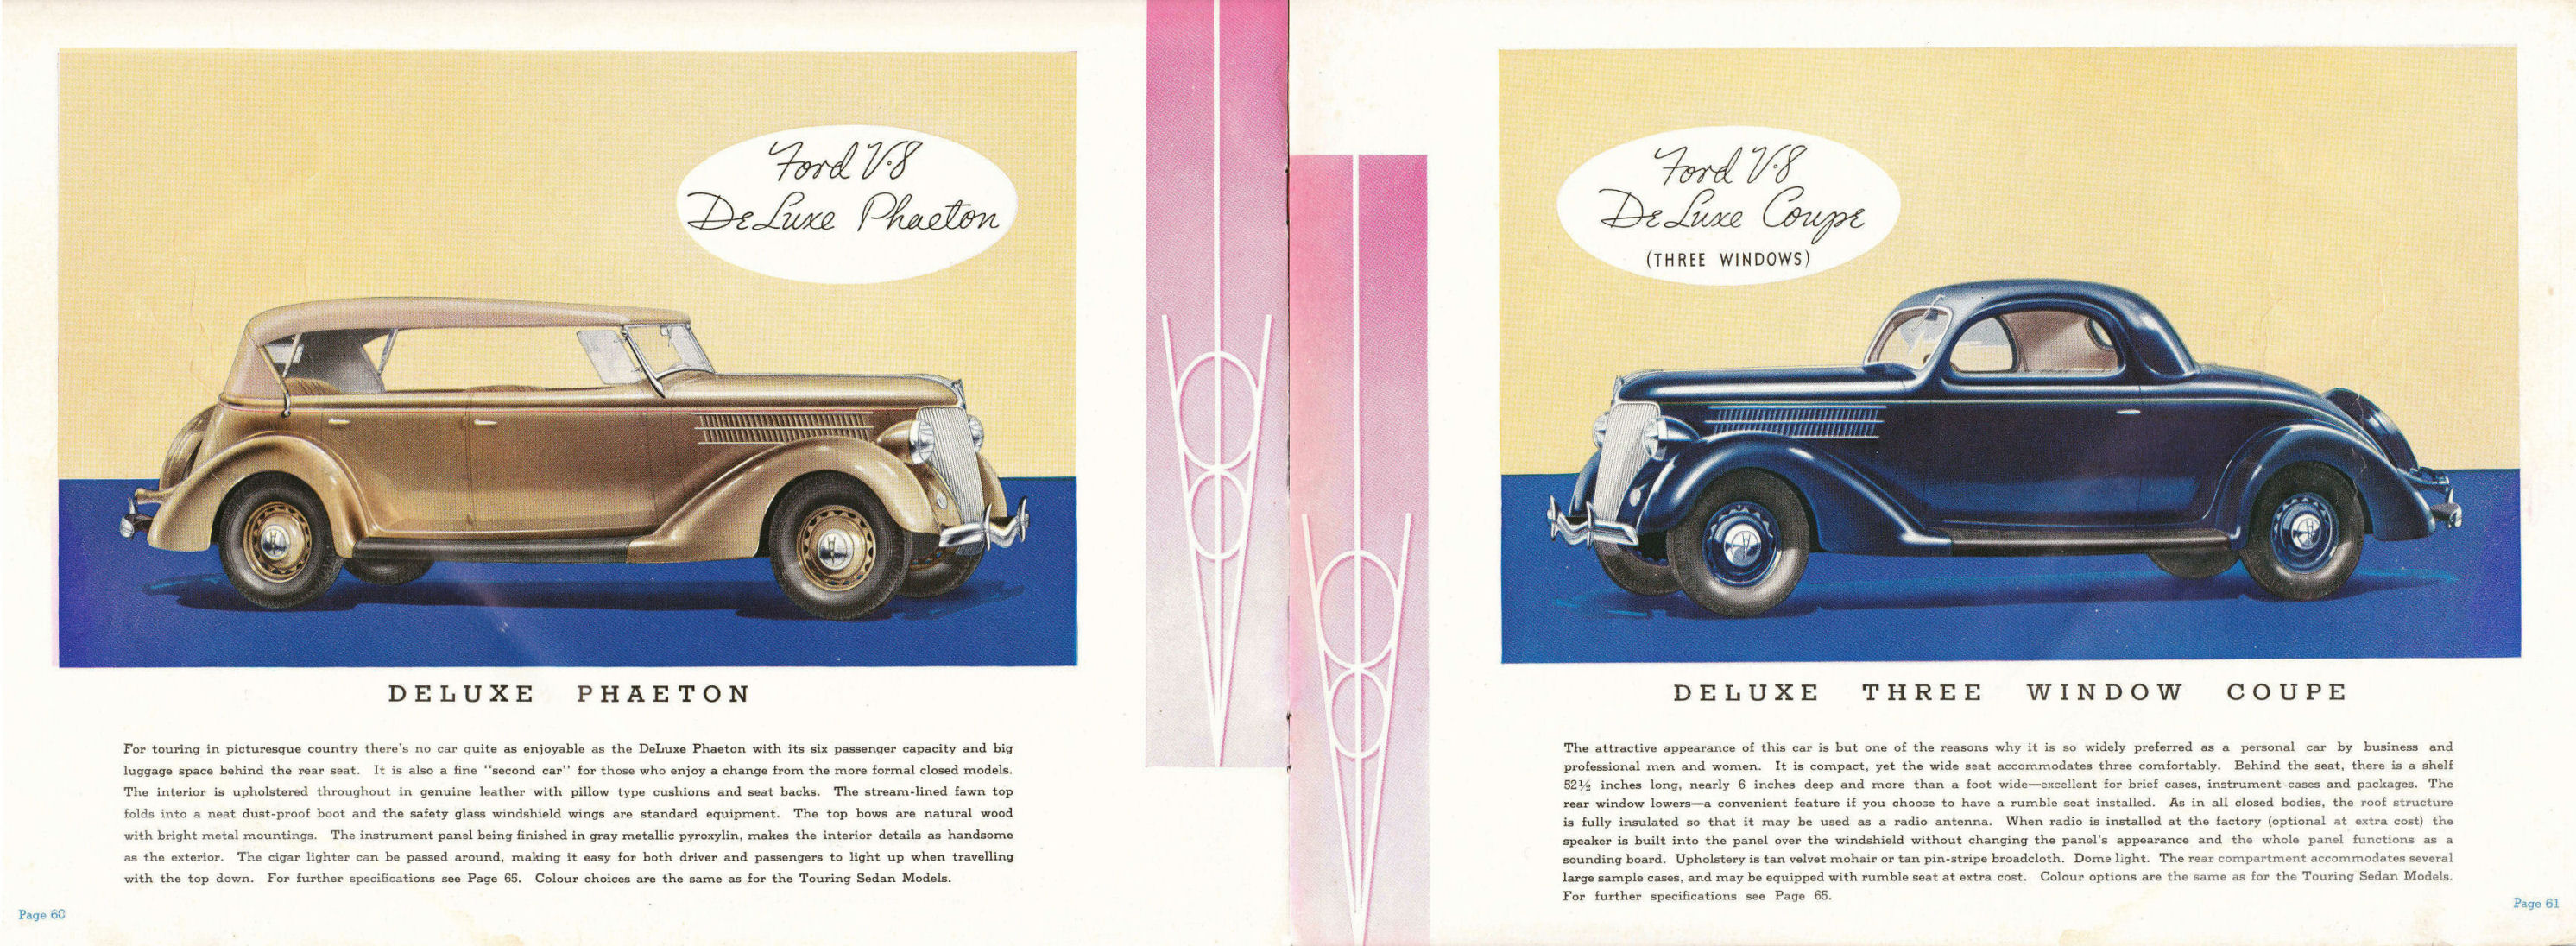 1936_Ford_Dealer_Album_Cdn-60-61